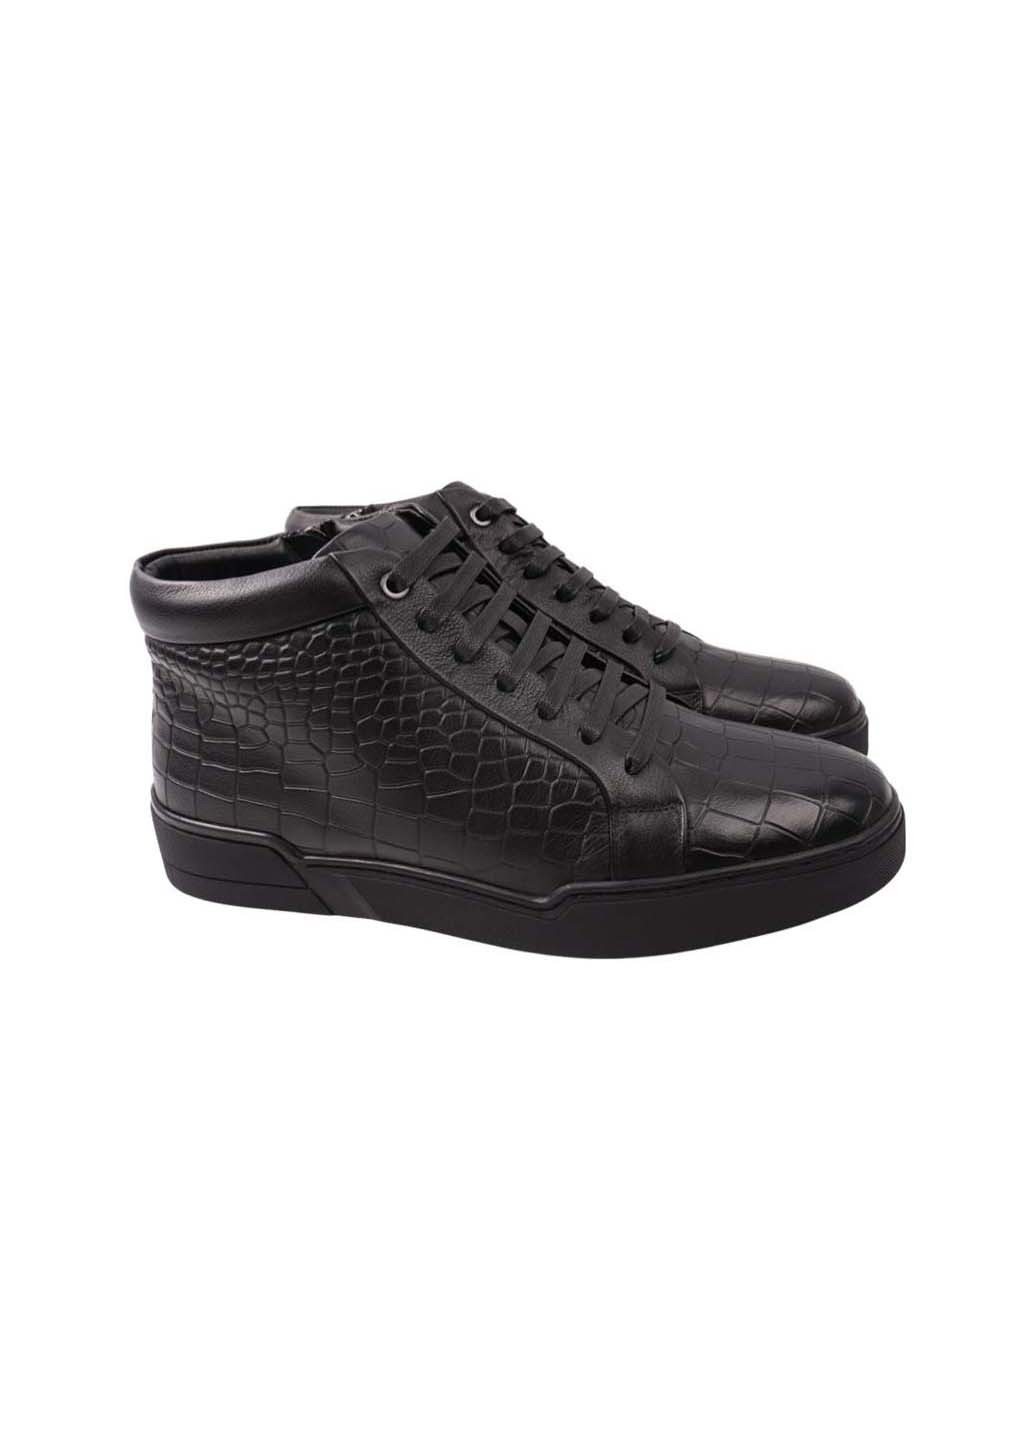 Черные осенние ботинки Emillio Landini